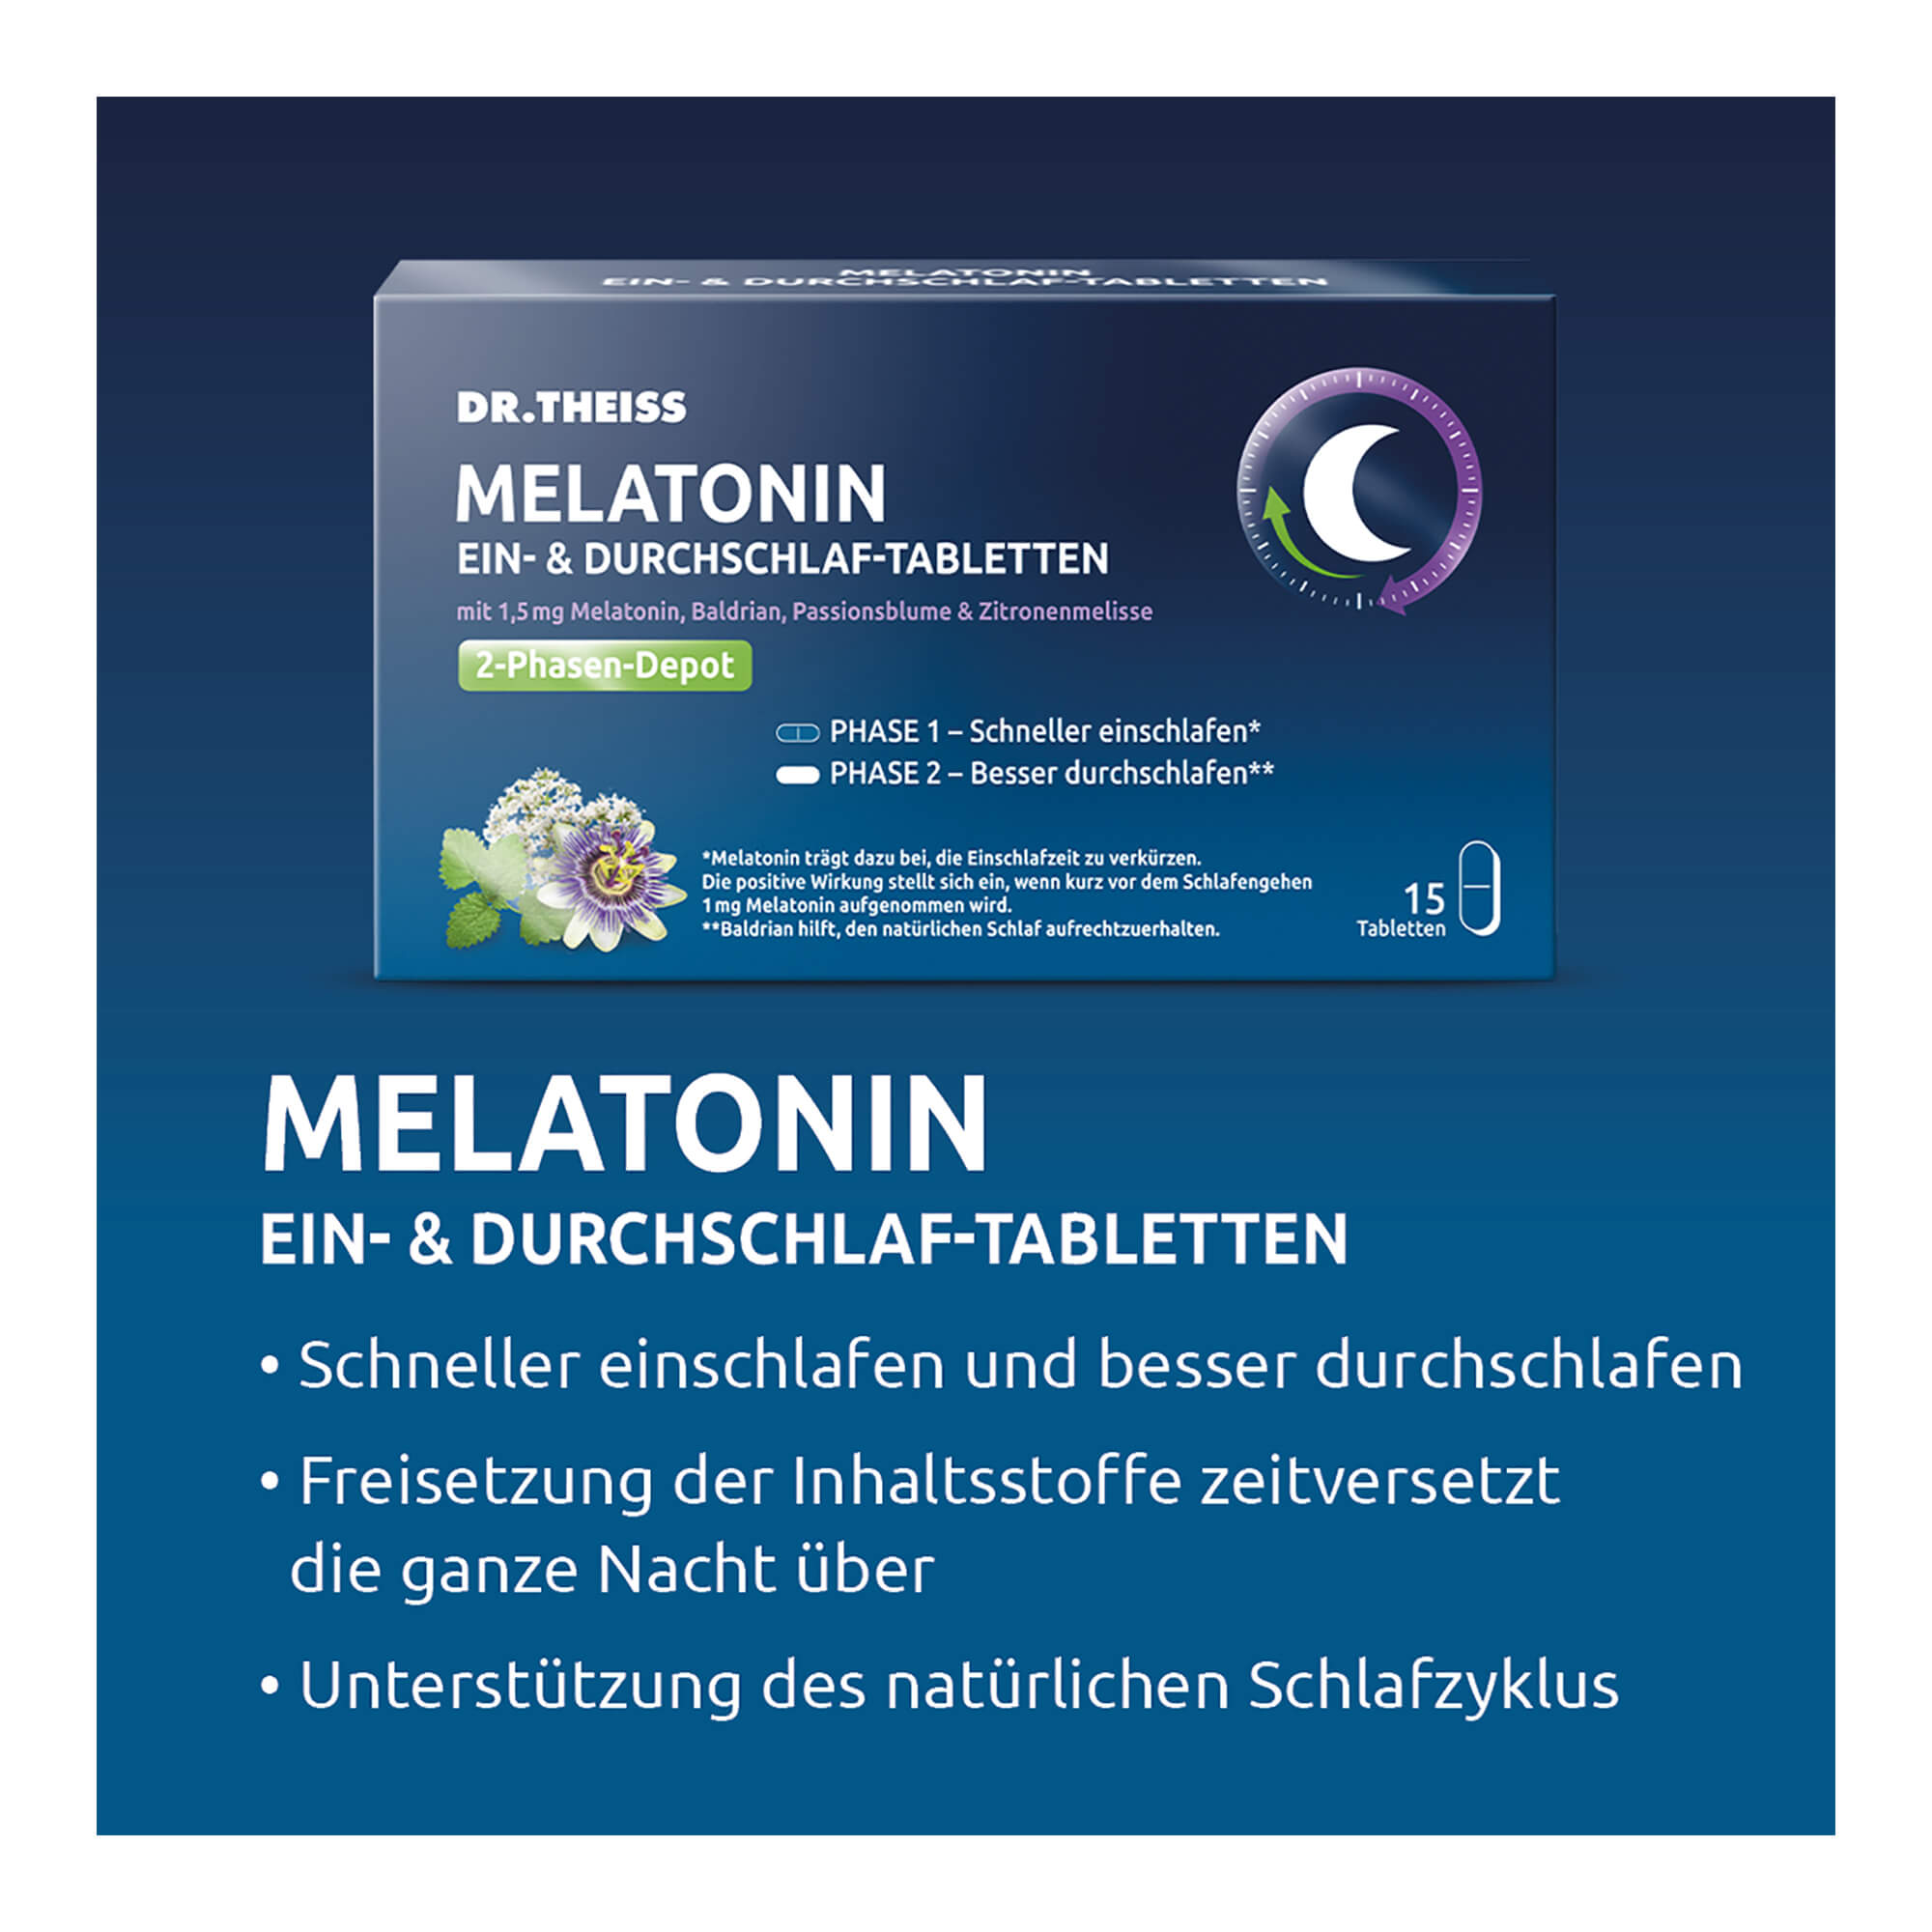 Dr. Theiss Melatonin Ein- & Durchschlaf-Tabletten Merkmale